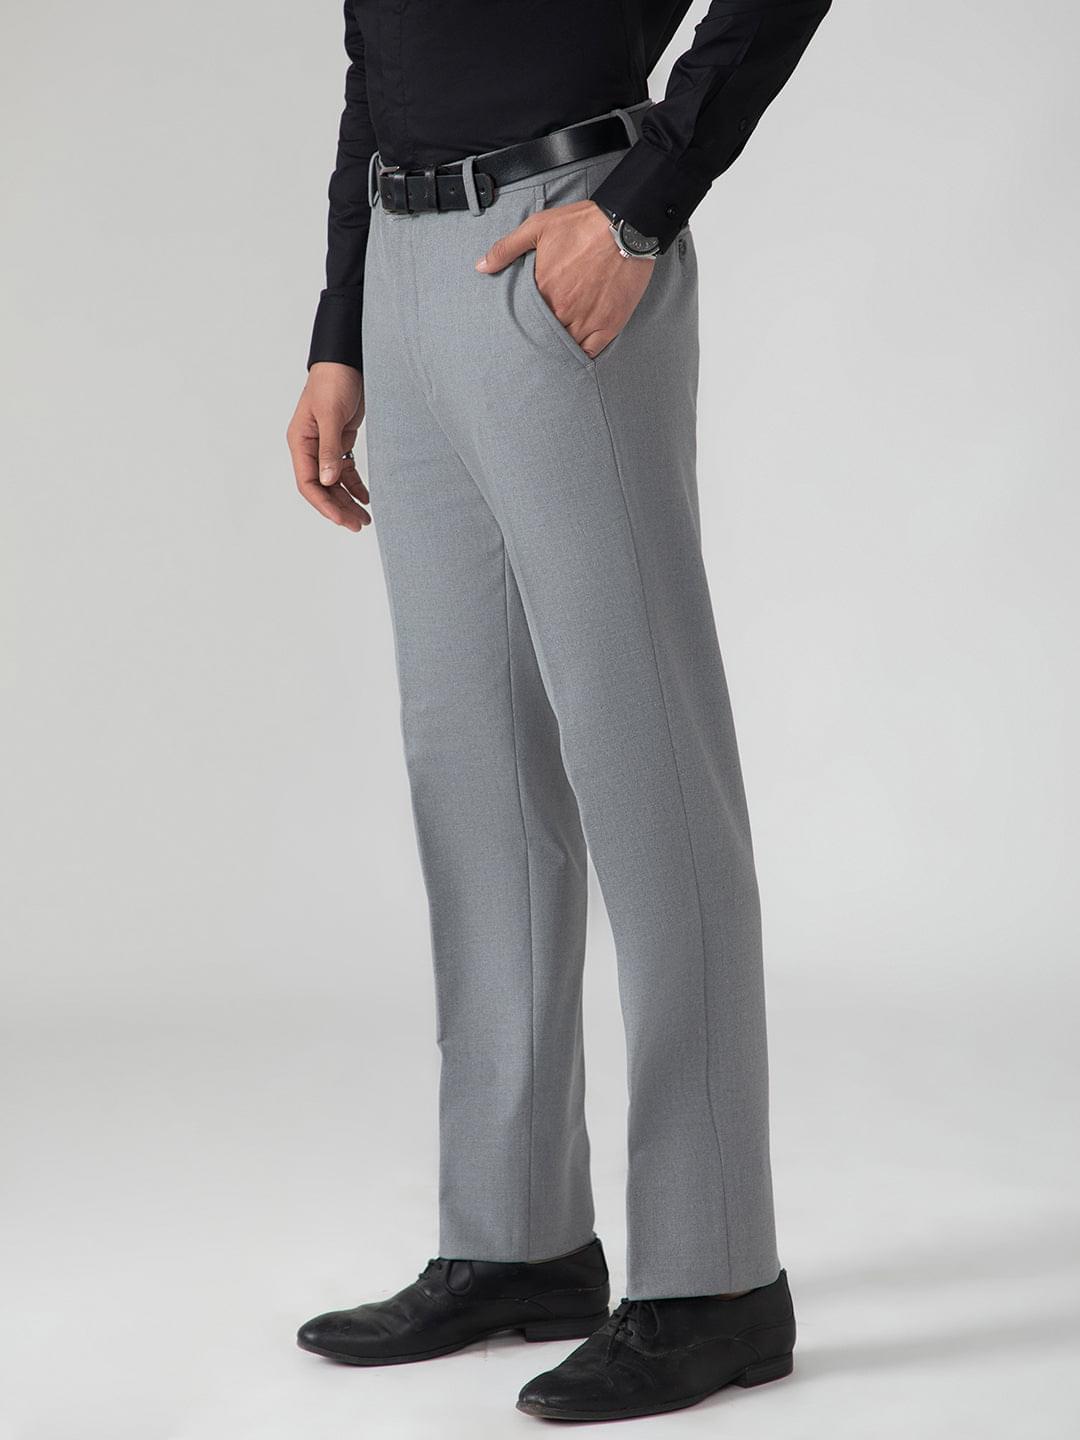 Heather Grey Plain Front Suit Pants | Louie's Tux Shop